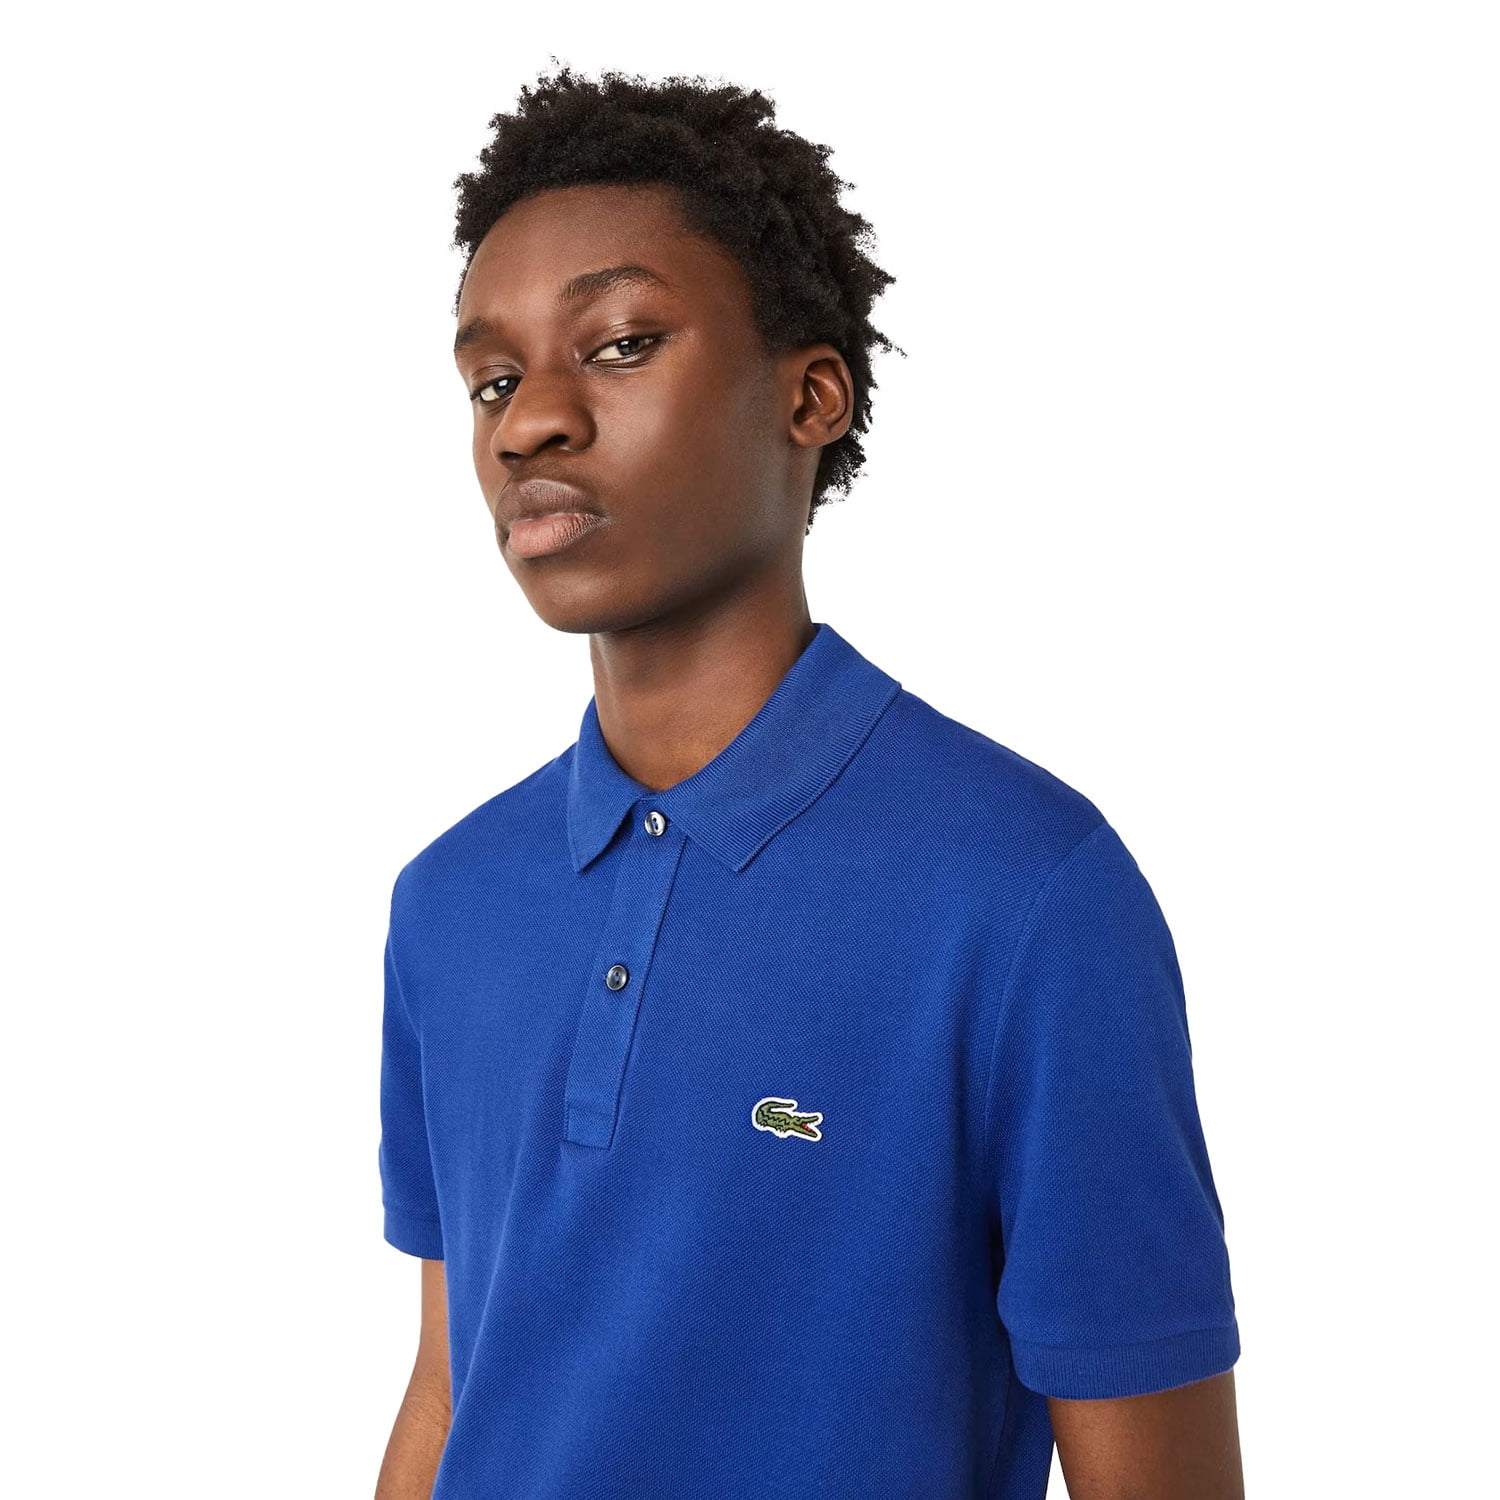 Lacoste Men's Slim Fit Petit Piqué Polo T-shirt Blue ph4012-bdm Walmart.com